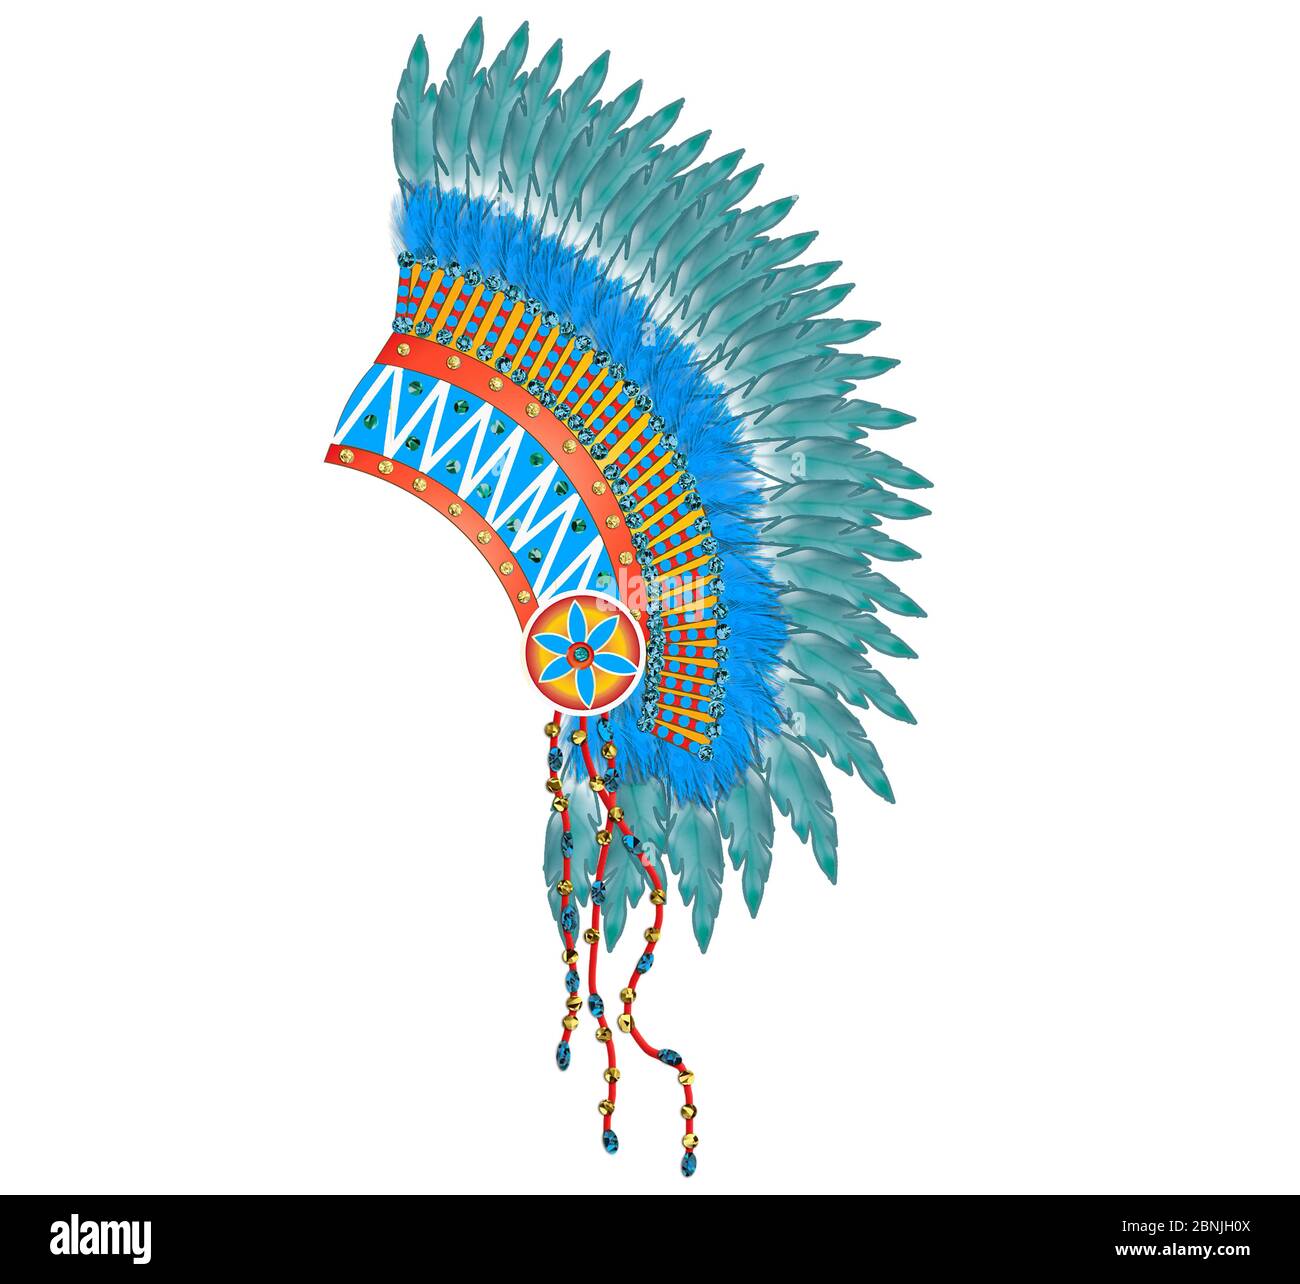 Grafik amerikanischer Indischer Kopfschmuck isoliert auf Weiß in Blautönen, einer in Brauntönen. Stockfoto